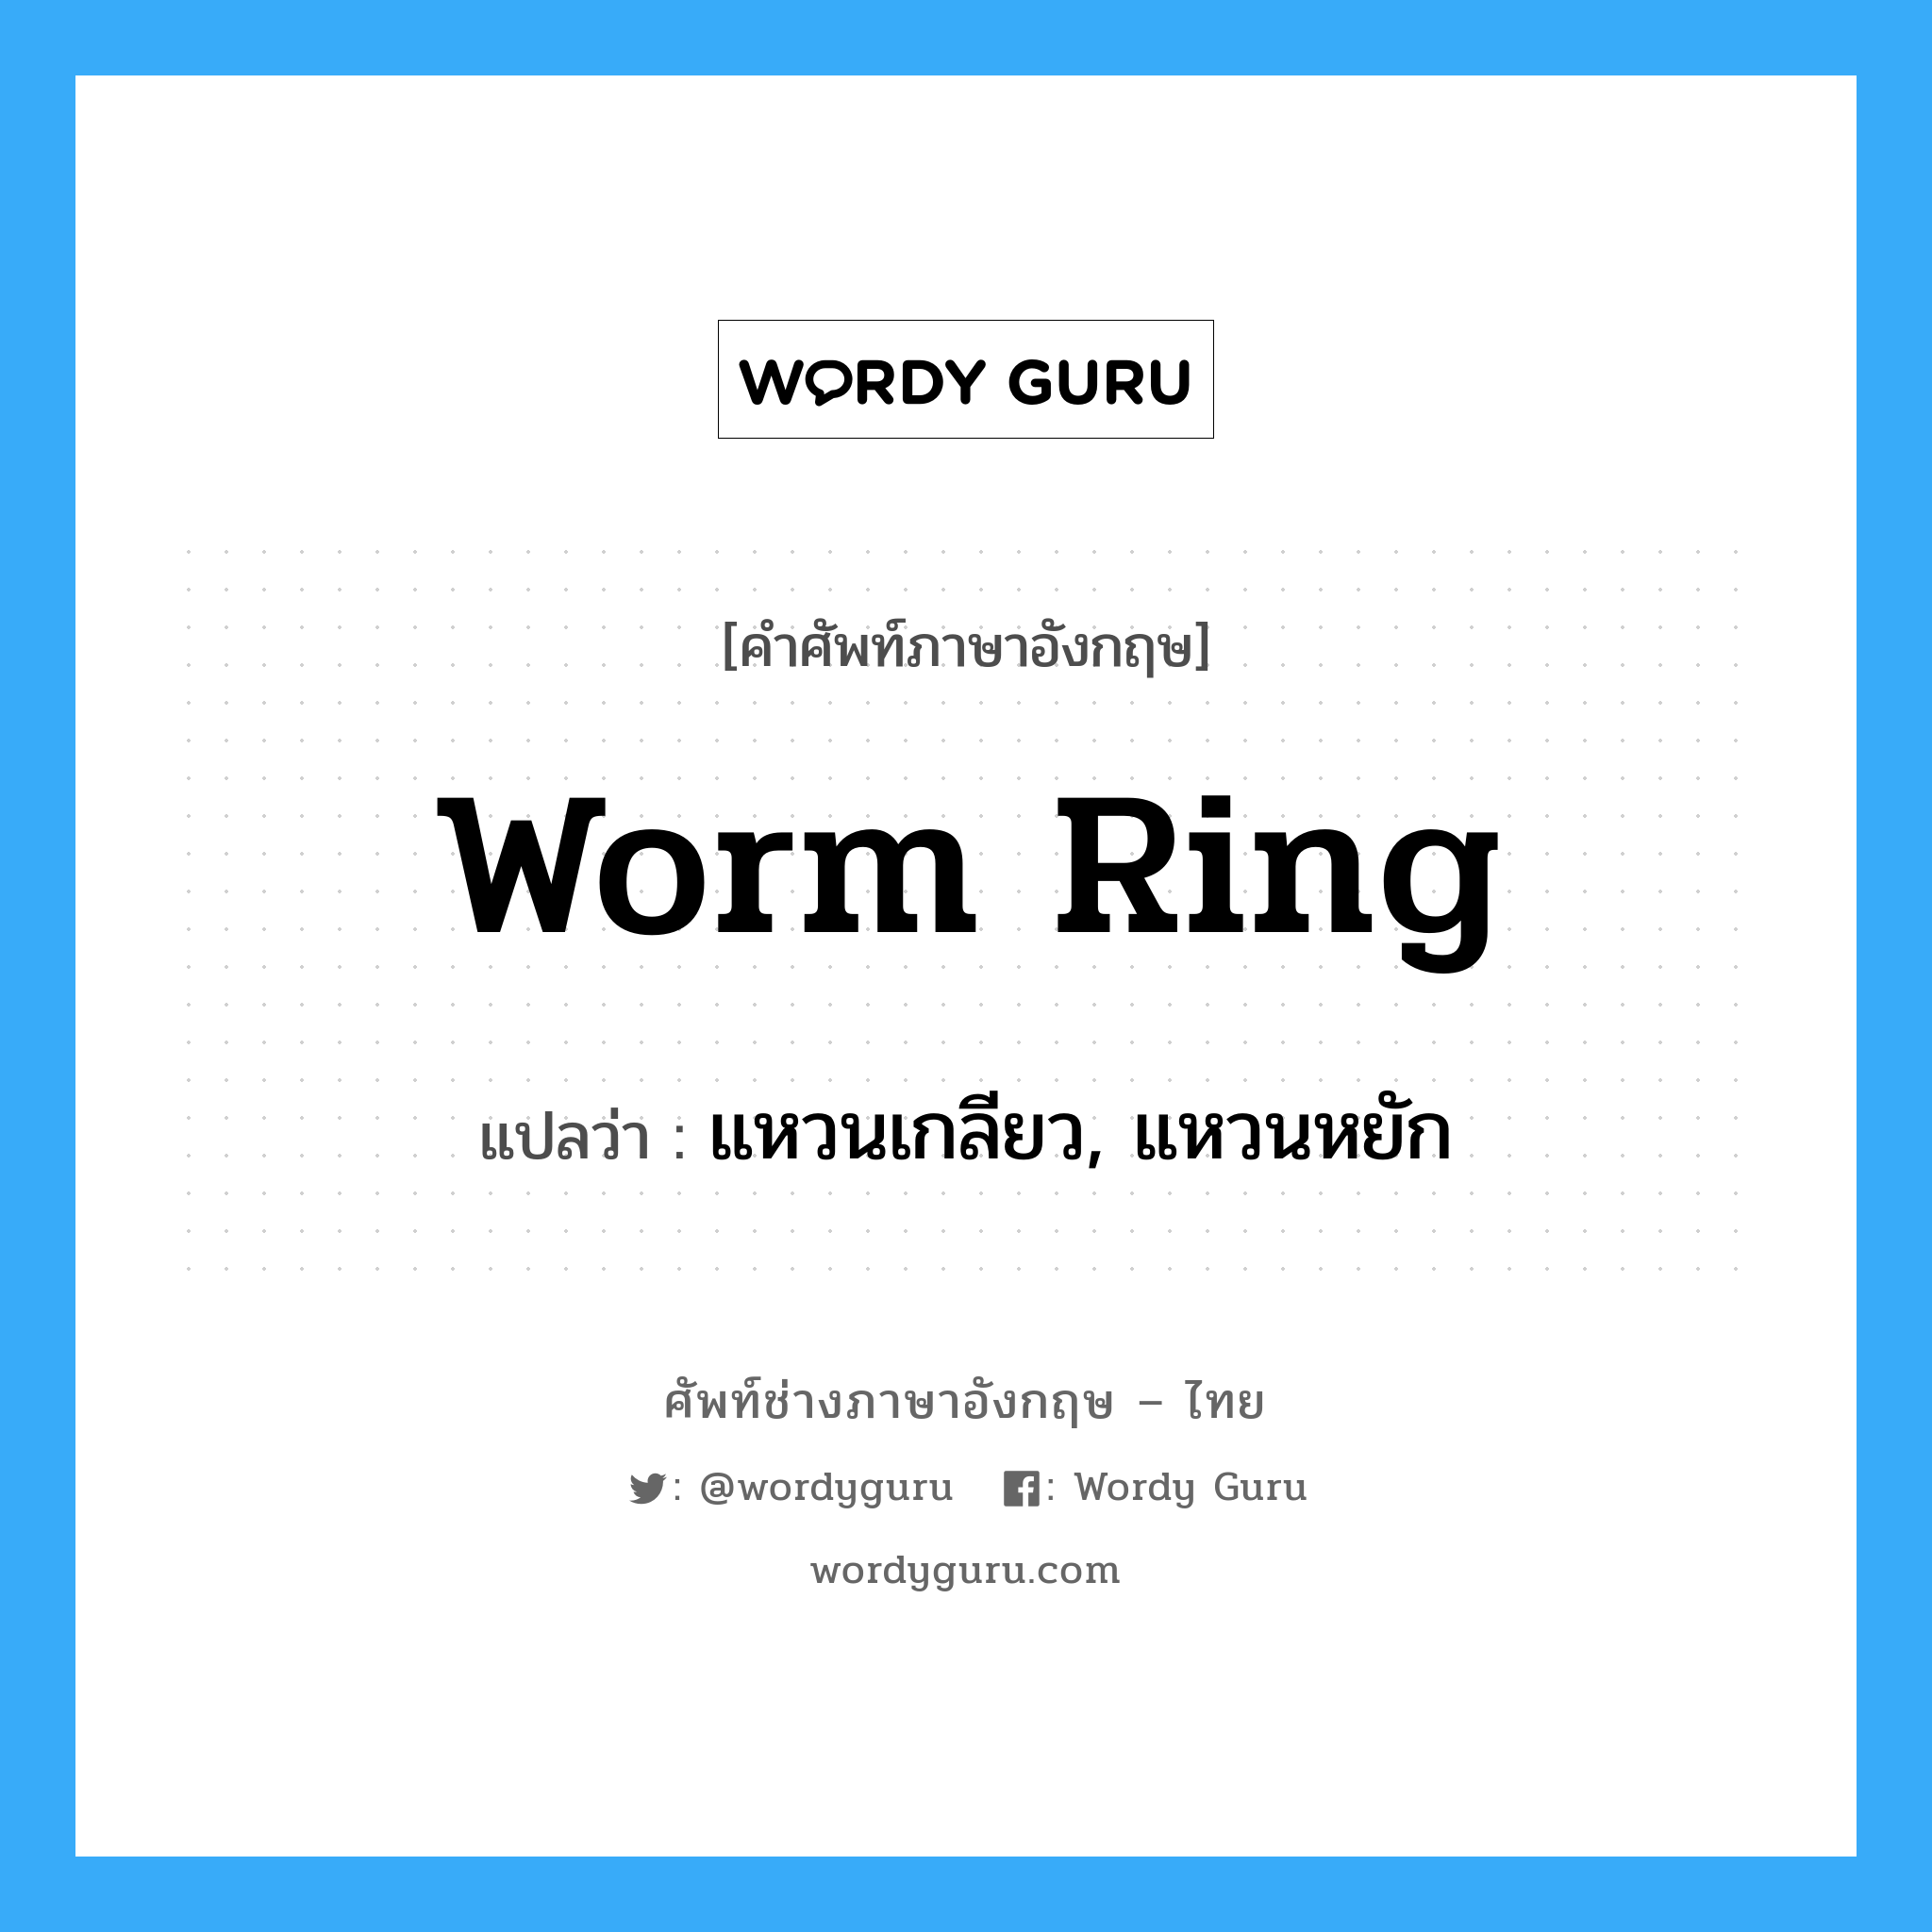 worm ring แปลว่า?, คำศัพท์ช่างภาษาอังกฤษ - ไทย worm ring คำศัพท์ภาษาอังกฤษ worm ring แปลว่า แหวนเกลียว, แหวนหยัก